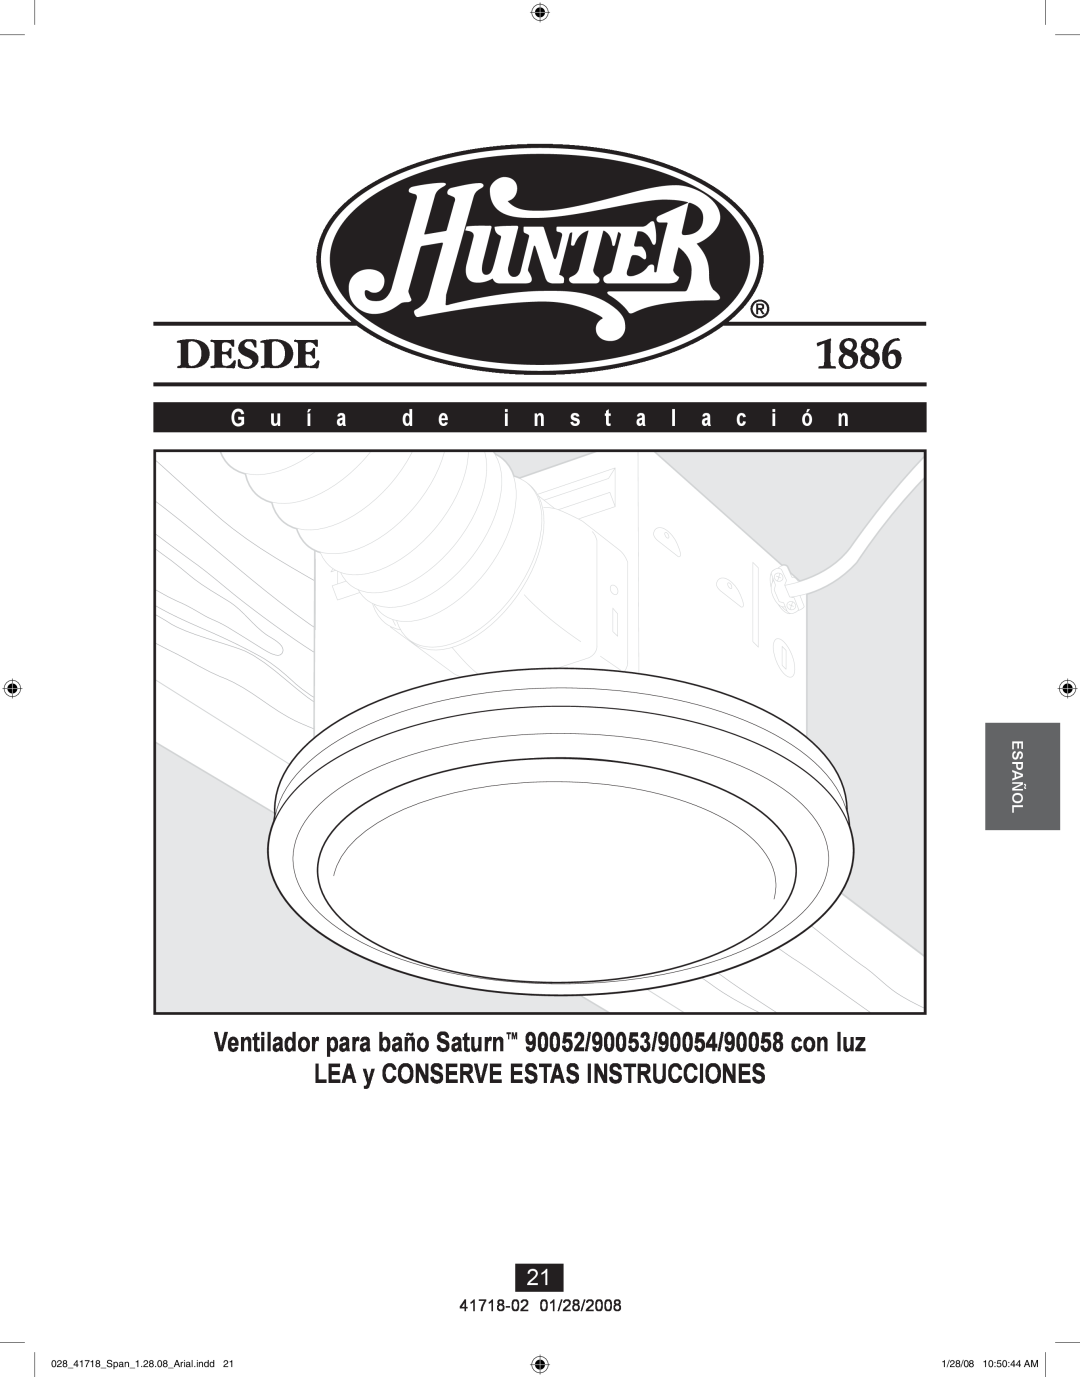 Hunter Fan Ventilador para baño Saturn 90052/90053/90054/90058 con luz, LEA y CONSERVE ESTAS INSTRUCCIONES, G u í a 